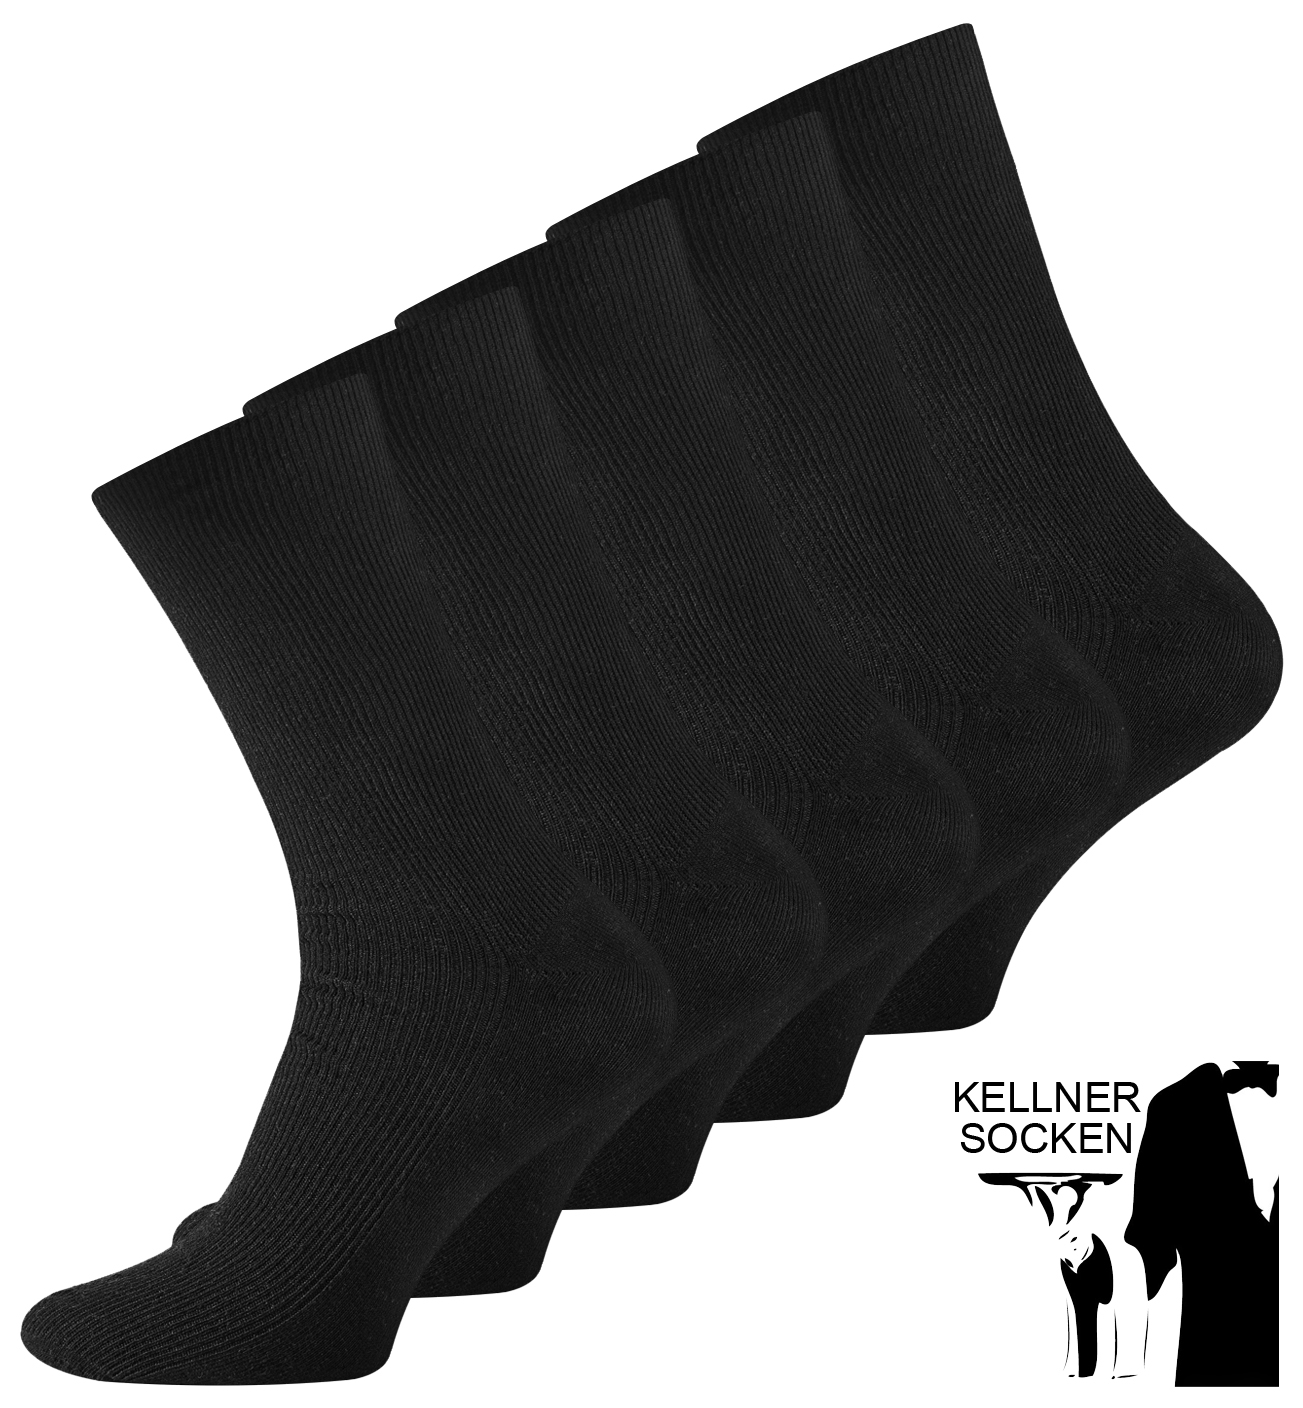 15 Paar Herren Kellner Socken schwarz 100% Baumwolle ohne Naht  TOP 